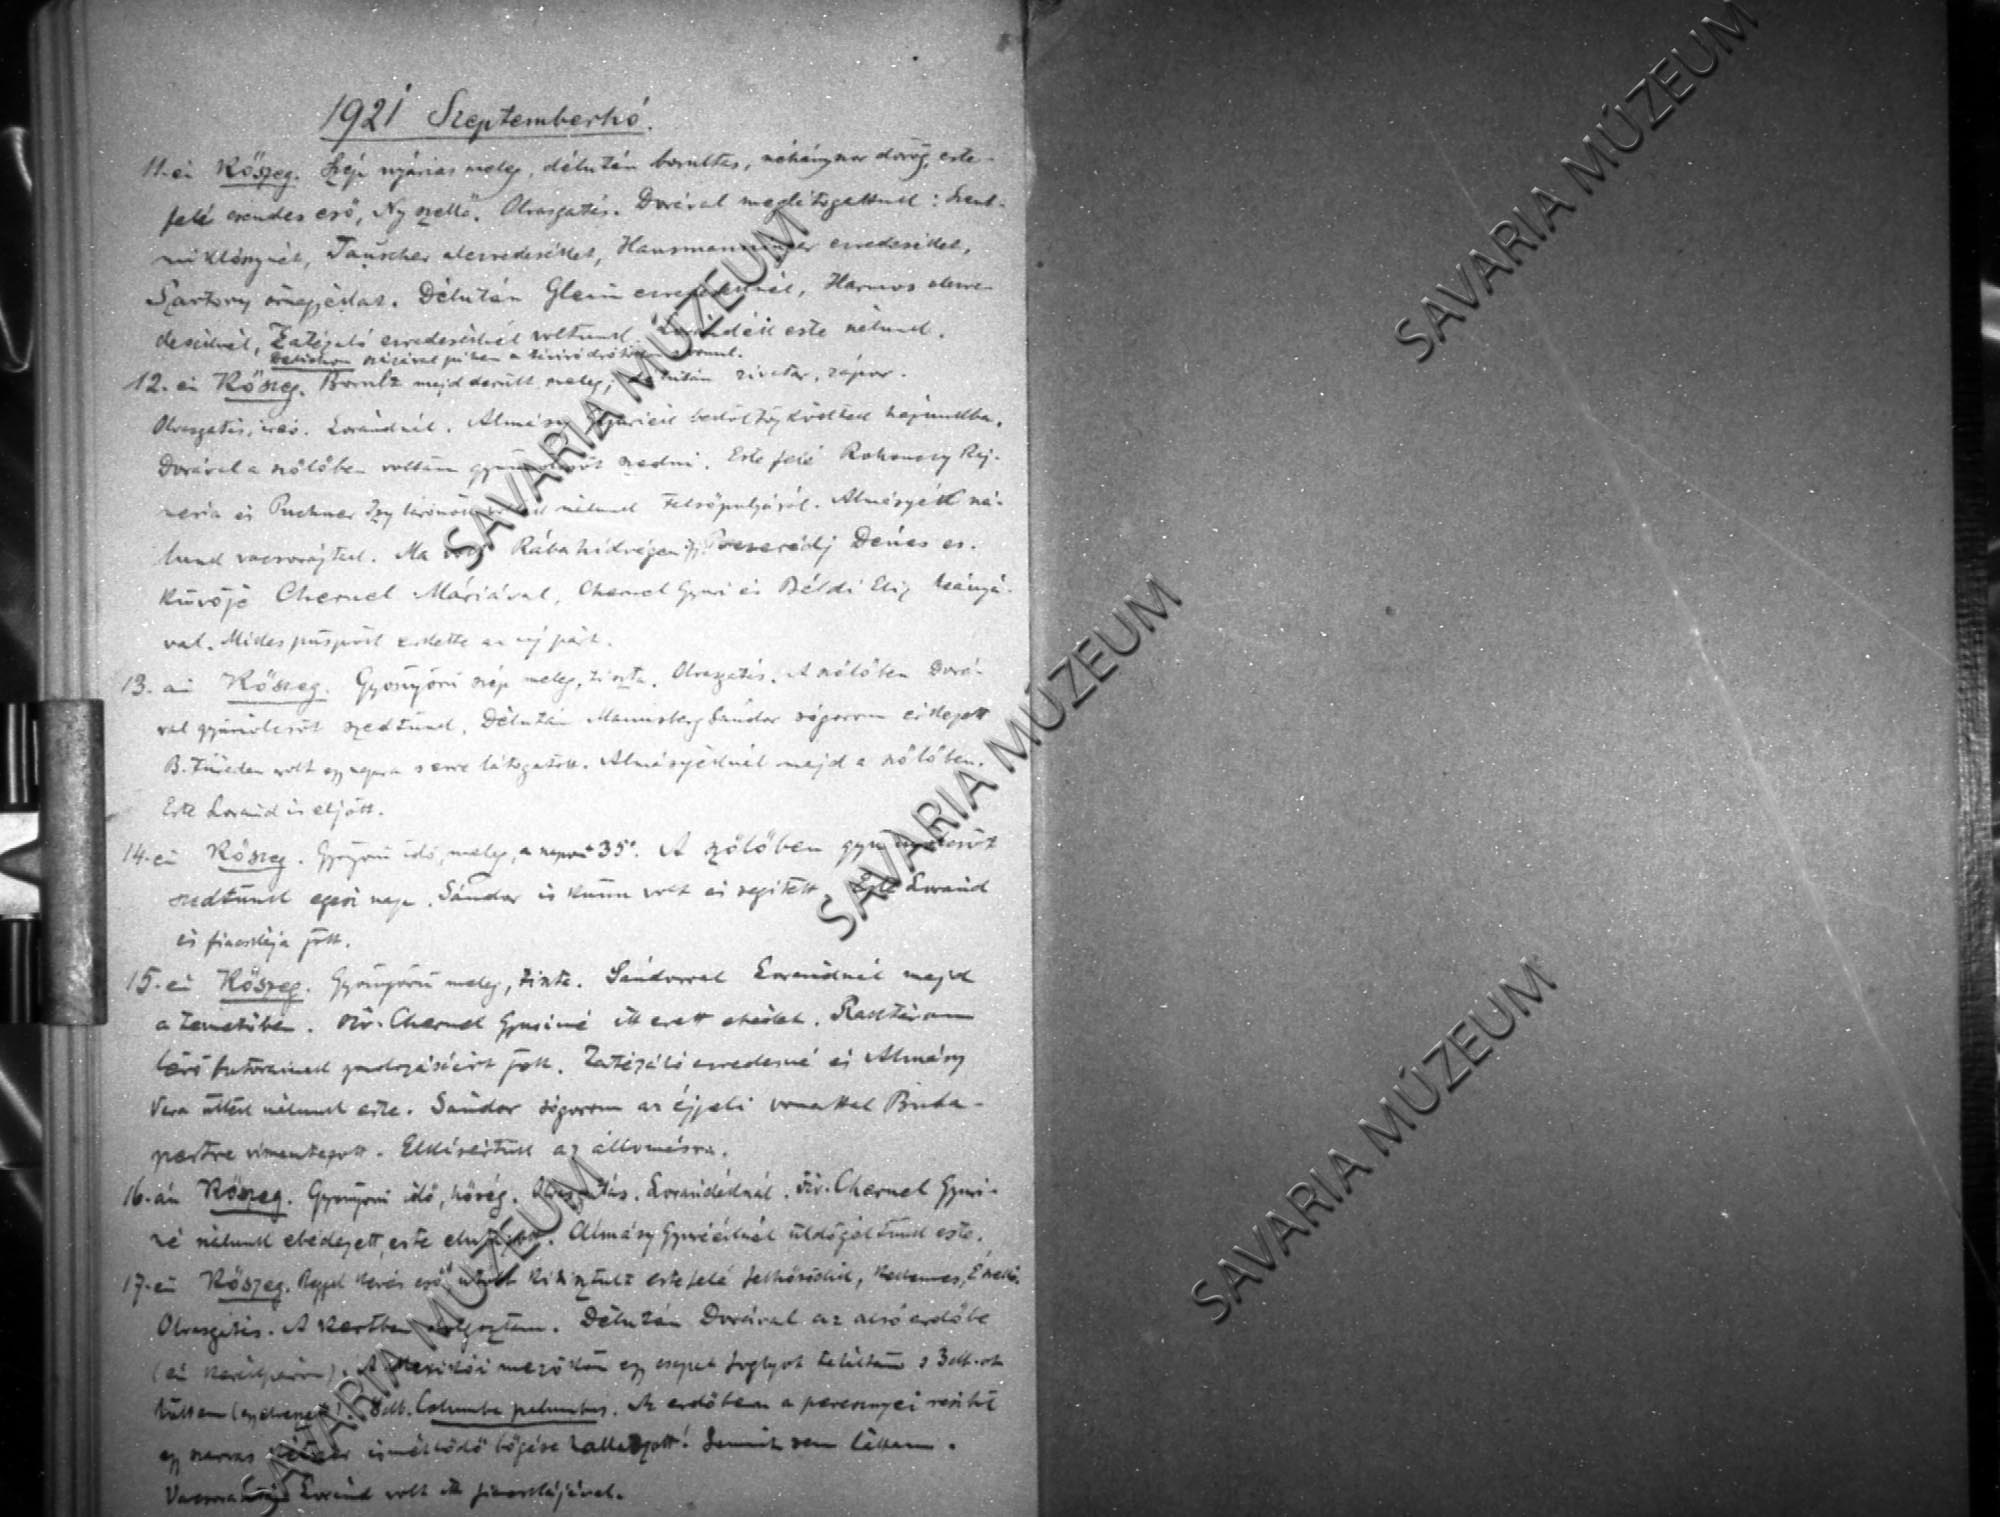 Chernel István naplójának részlete 1921. január 1.- december 31. (Savaria Megyei Hatókörű Városi Múzeum, Szombathely CC BY-NC-SA)